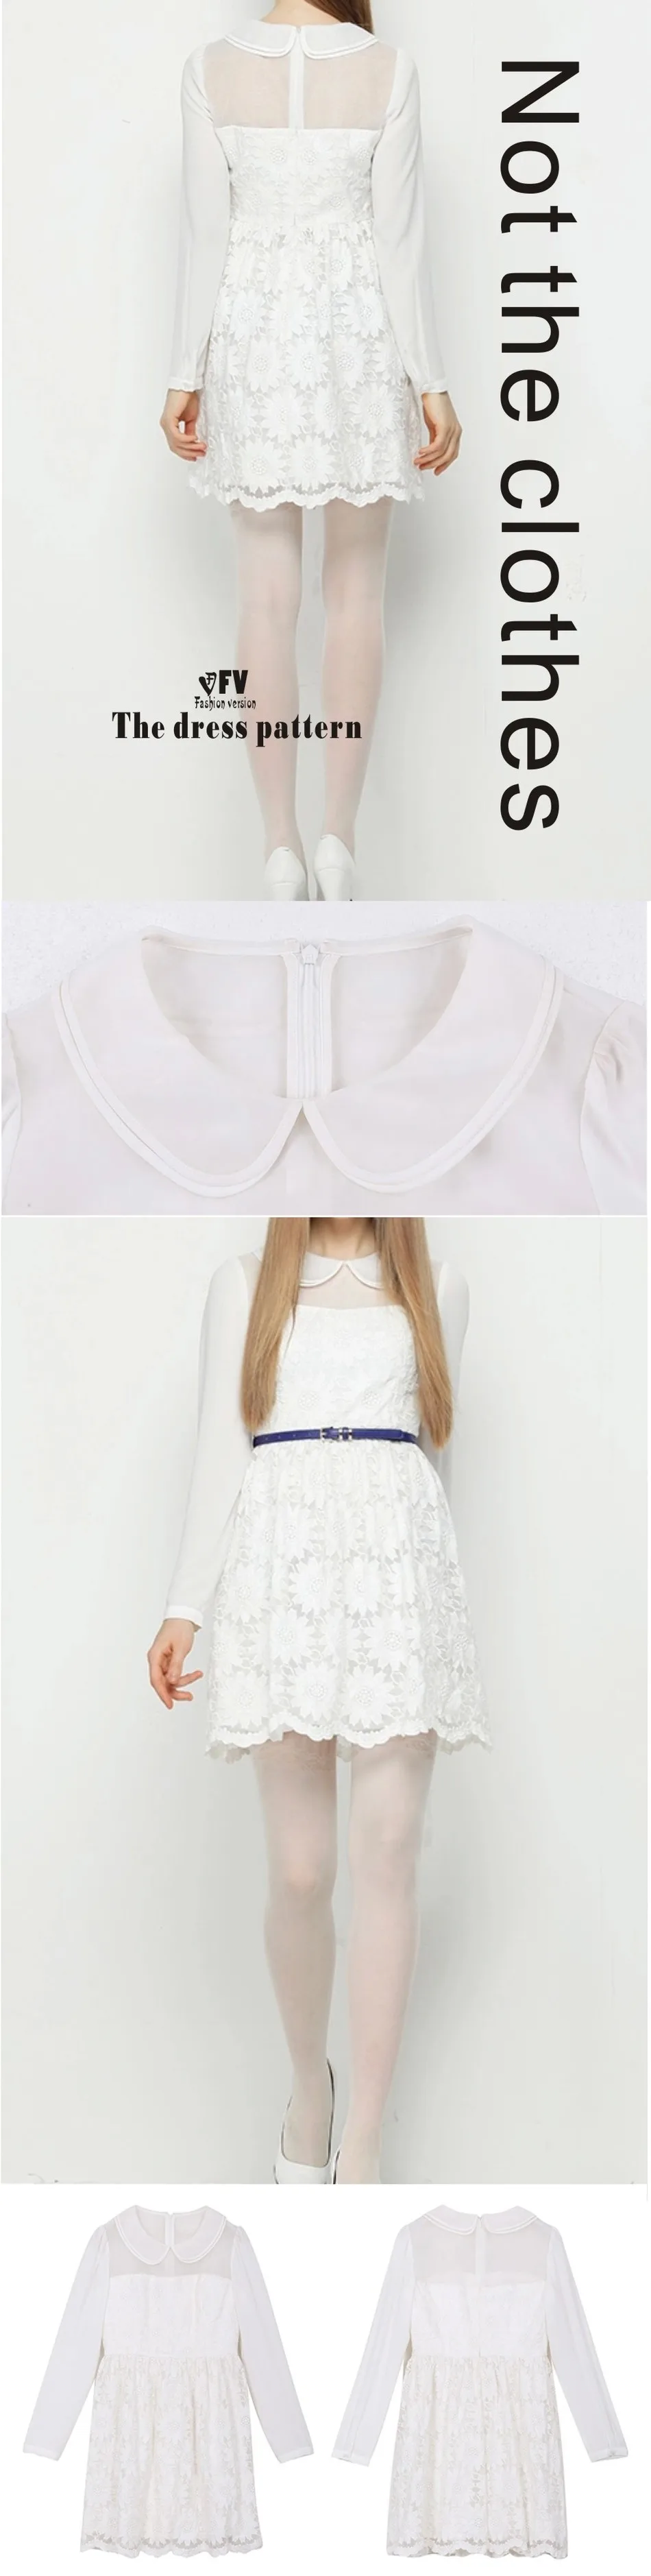 Платья Швейные шаблон резки одежды для рисования DIY(не продавая одежду) BLQ-195